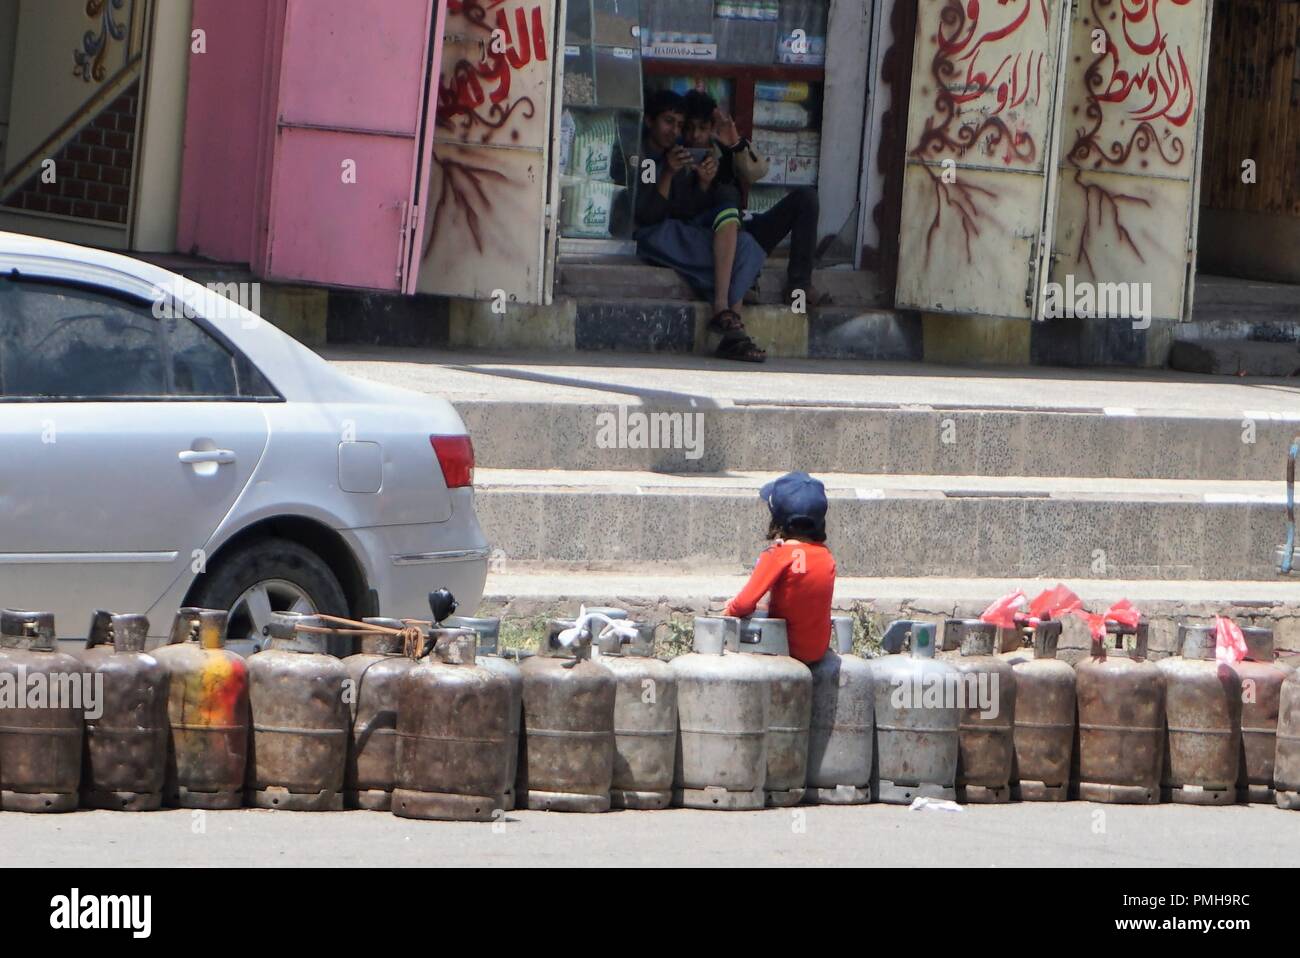 Sanaa, Jemen. 18 Sep, 2018. Ein Kind sitzt auf leere kochen Gasflaschen auf einer Hauptstraße in Sanaa, Jemen, im Sept. 18, 2018. Die Straßen sind fast leer in der jemenitischen Hauptstadt Sanaa eine Woche-lange schwere Brennstoff-mangel Kräfte Hunderttausende Fahrzeuge um die Straßen sterben. Die große Ölkrise wurde durch den eskalierenden Krieg Anfang dieser Woche in strategischen des Landes Rote Meer Hafenstadt Hodeidah nach dem Zusammenbruch der Friedensgespräche, die von den Vereinten Nationen in Genf vermittelt zwischen der Jemenitischen kriegführenden Parteien ausgelöst. Credit: Mohamed al-Azaki/Xinhua/Alamy leben Nachrichten Stockfoto